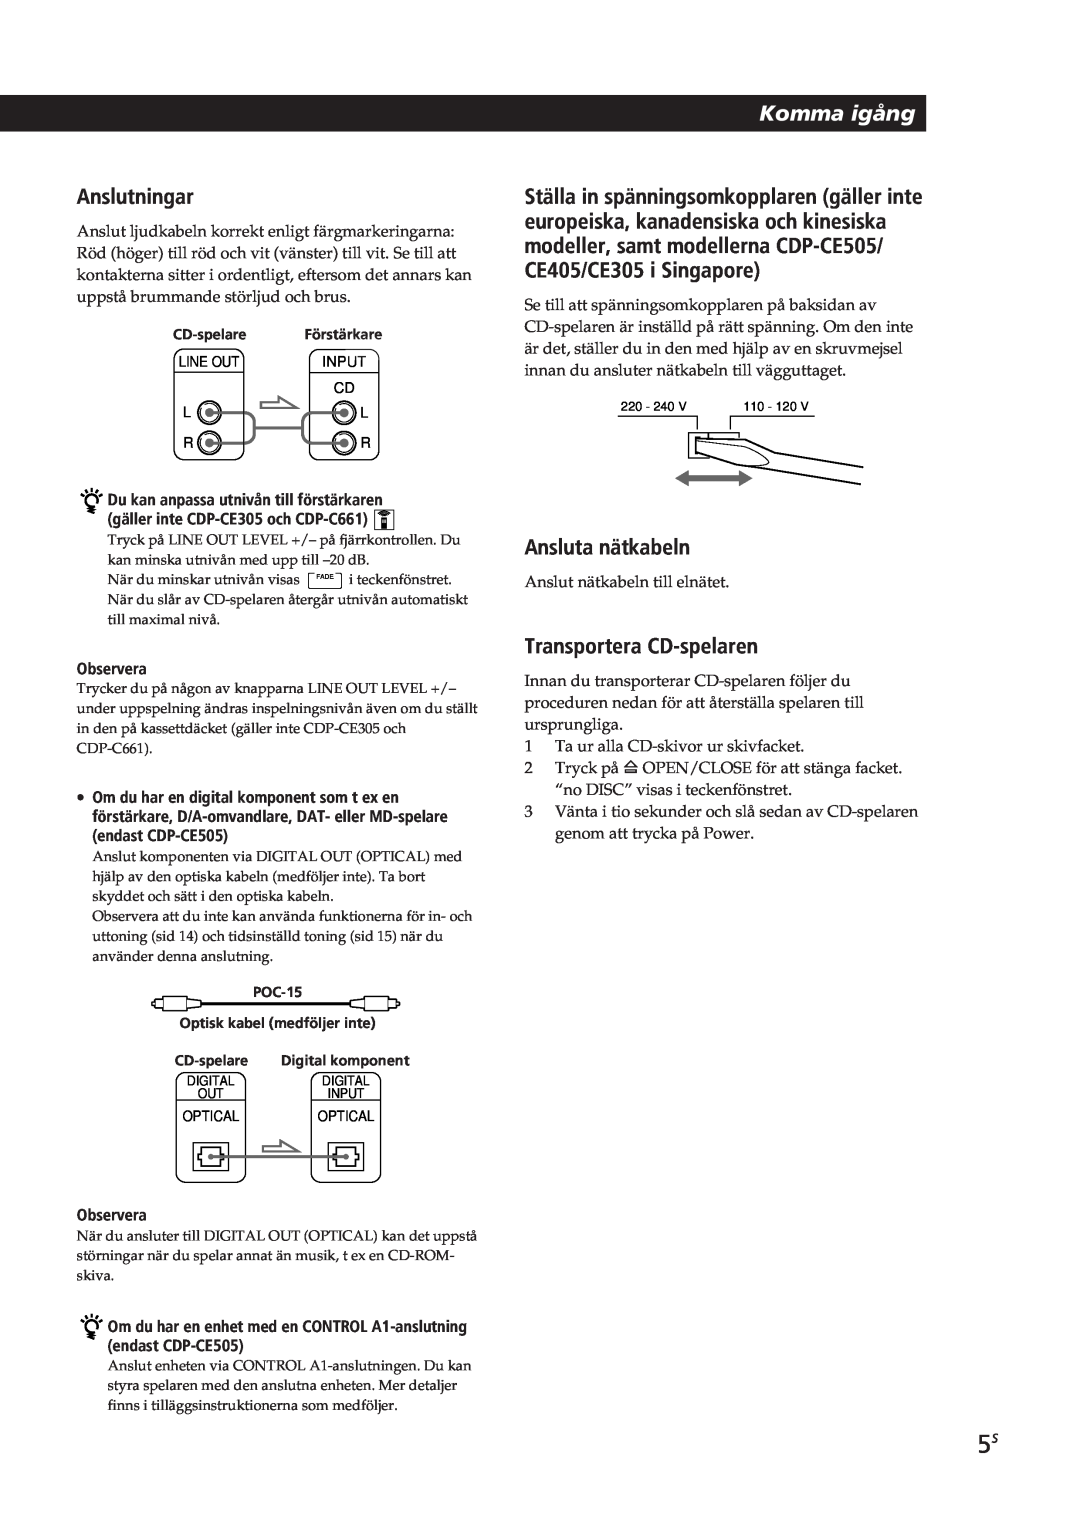 Sony CDP-CE405, CDP-CE505, CDP-CE305 manual Komma igång, Anslutningar, Ansluta nätkabeln, Transportera CD-spelaren, Observera 